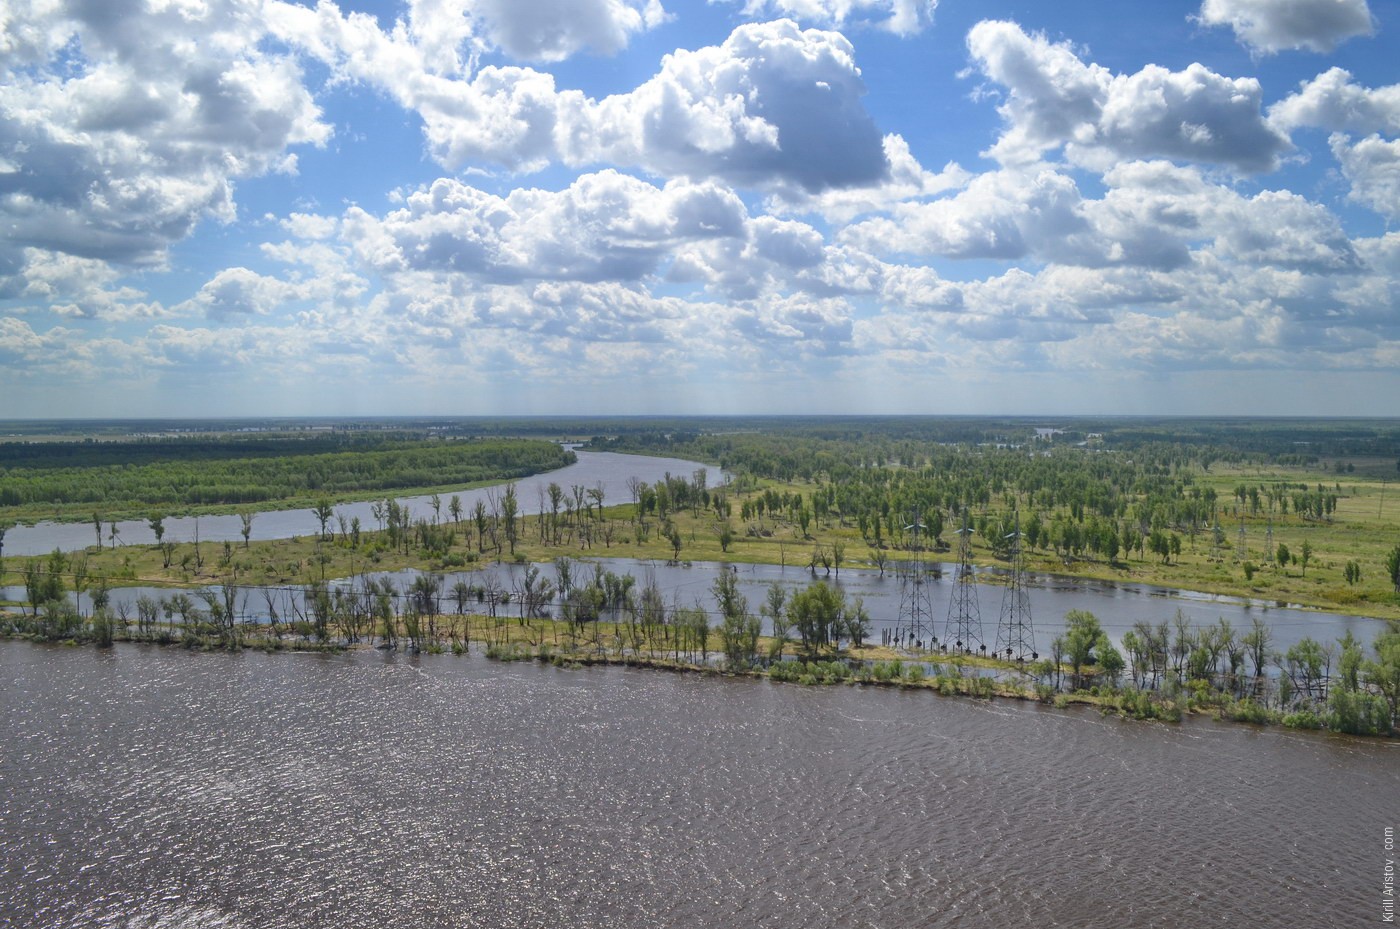 Вид на разлившуюся реку с опоры ЛЭП, Место: Река Тобол. Ярковский район, Тюменская область, Россия.